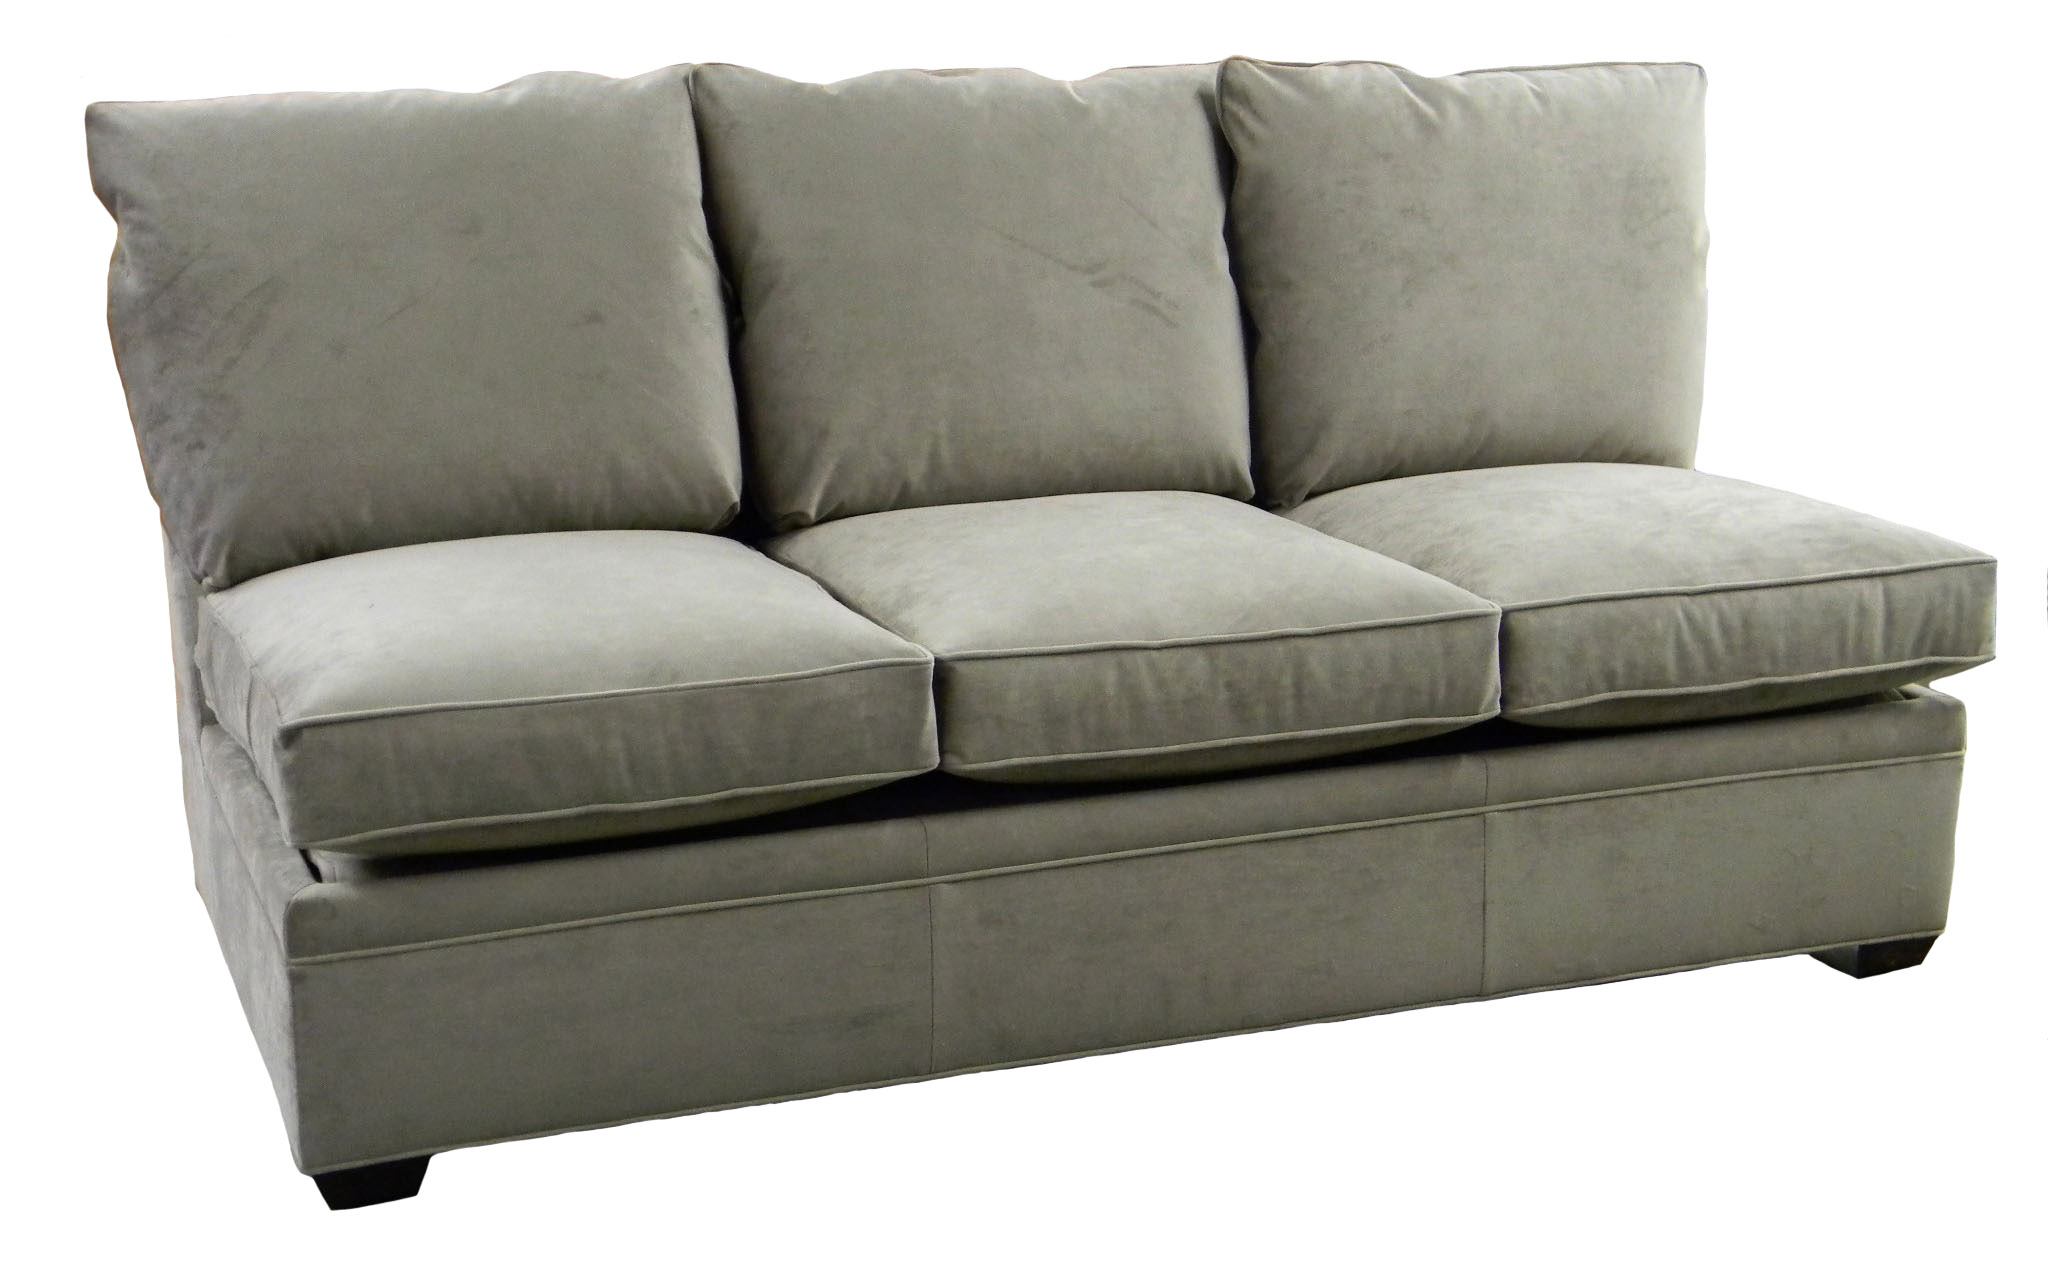 Armless Queen Size Sleeper Sofa • Patio Ideas